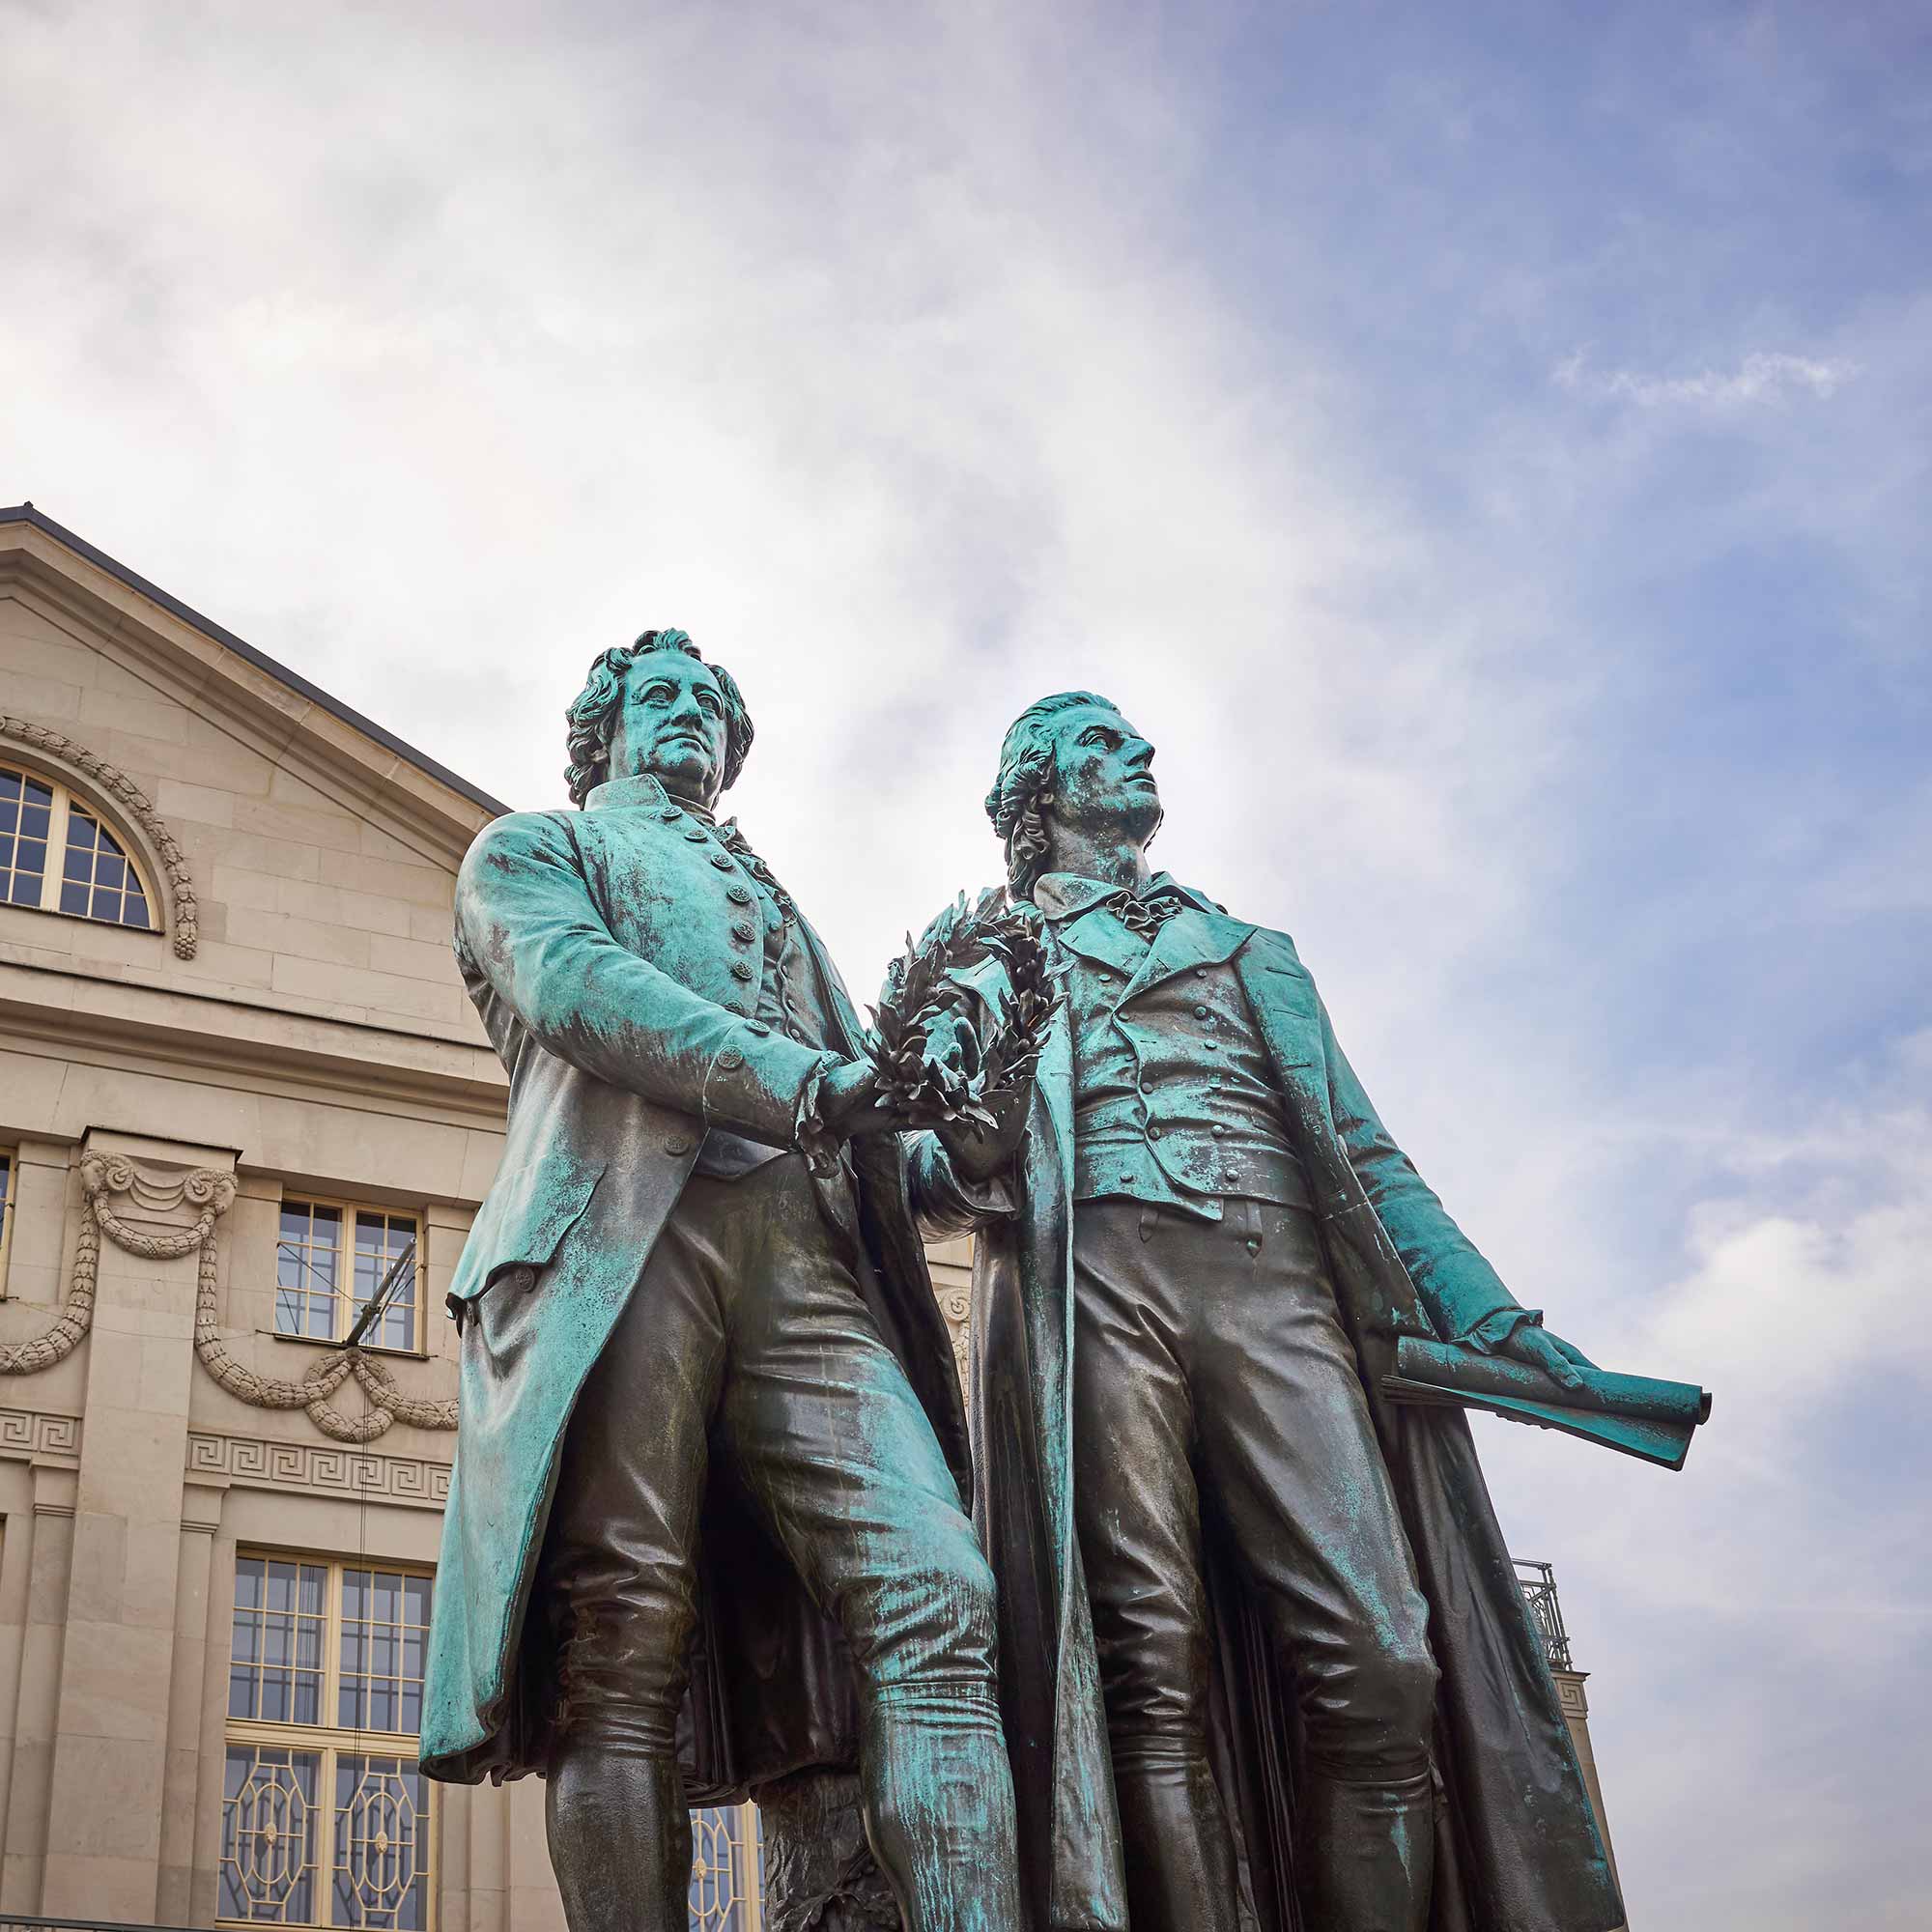 Das Bild zeigt die Statuen von Goethe und Schiller in der Start Weimar in Thüringen.